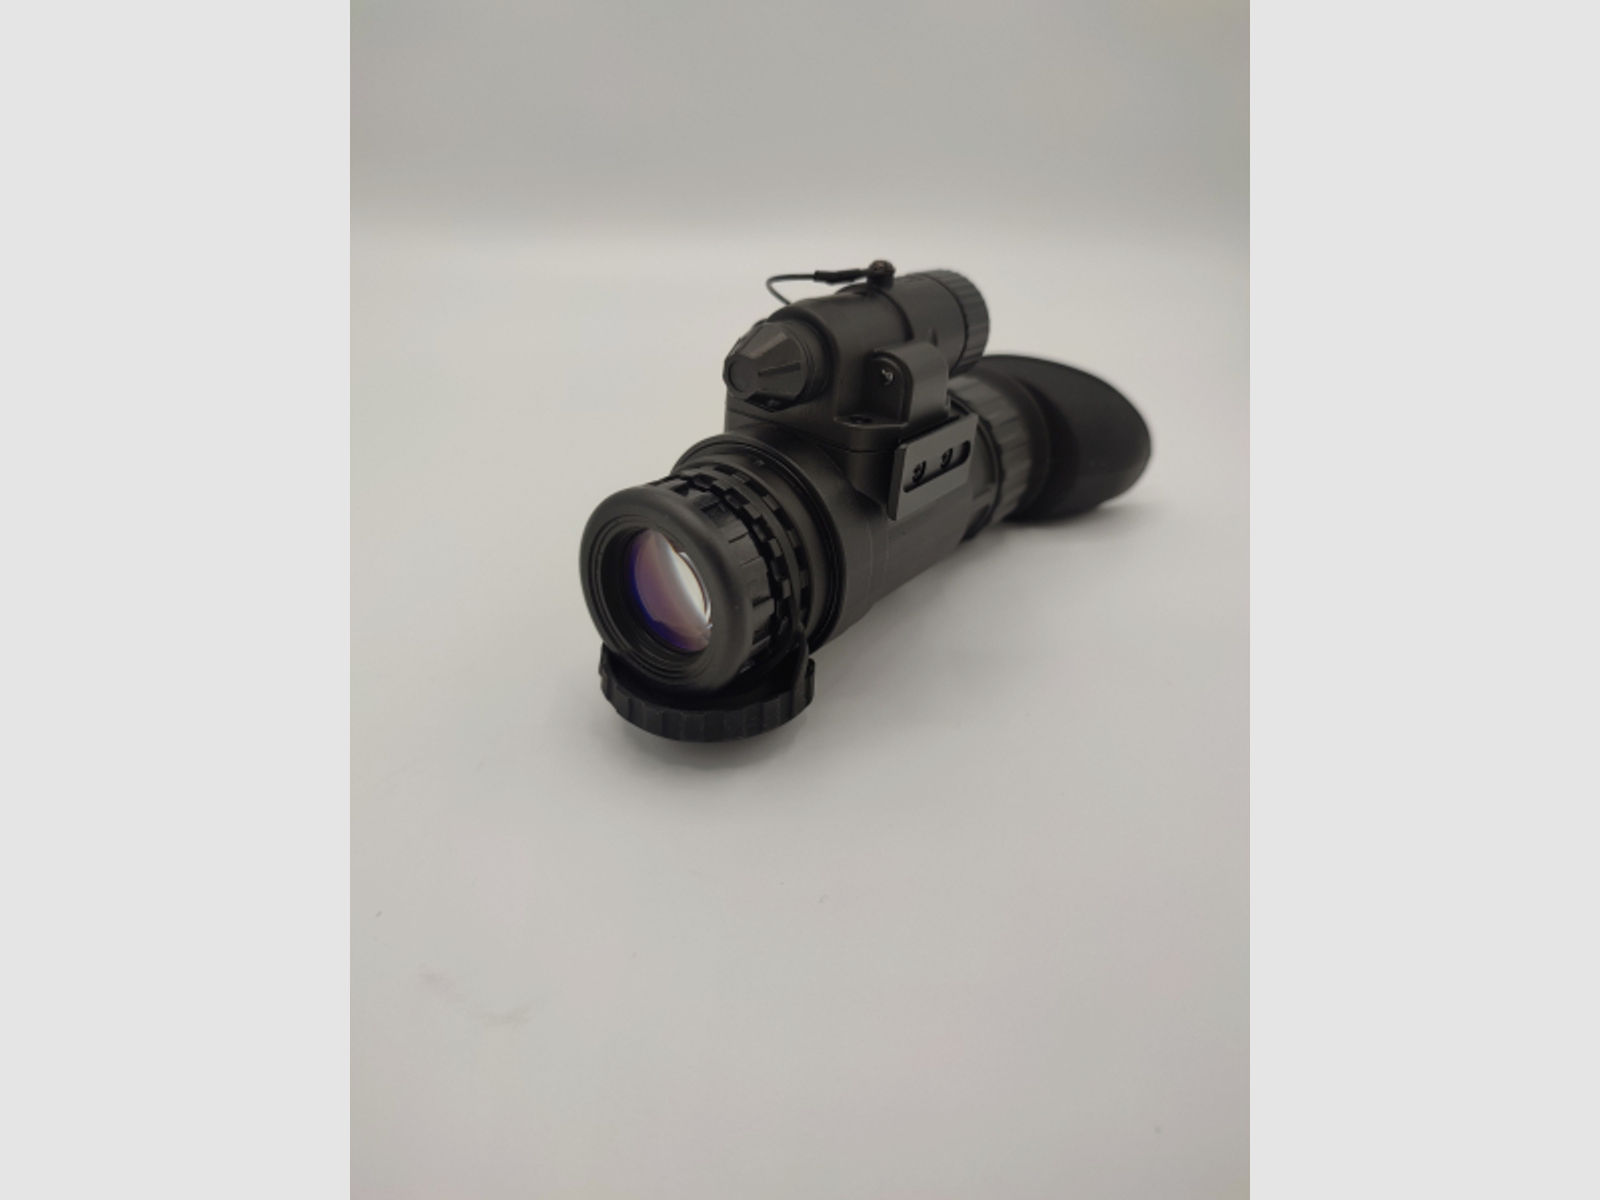 Nightspotter Nachtsichtgerät PS-14 PRO, Photonis Gen 2+, für Jäger, Outdoor, Security